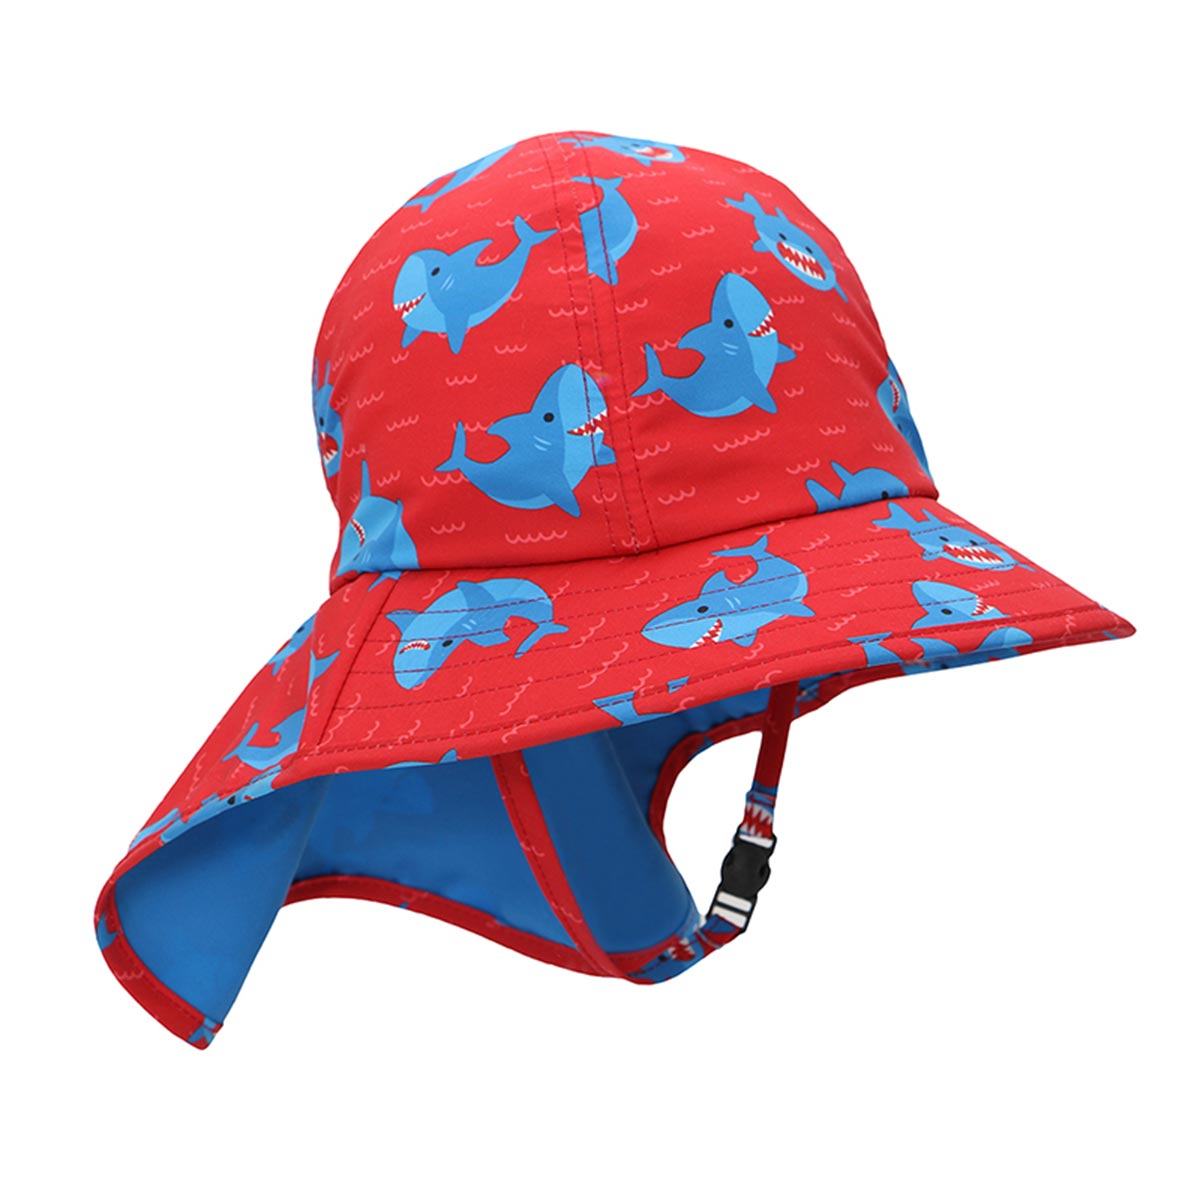 Βρεφικό Καπέλο Με Αντηλιακή Προστασία Zoocchini Blue Shark 6-24 Μηνών 6-24 Μηνών